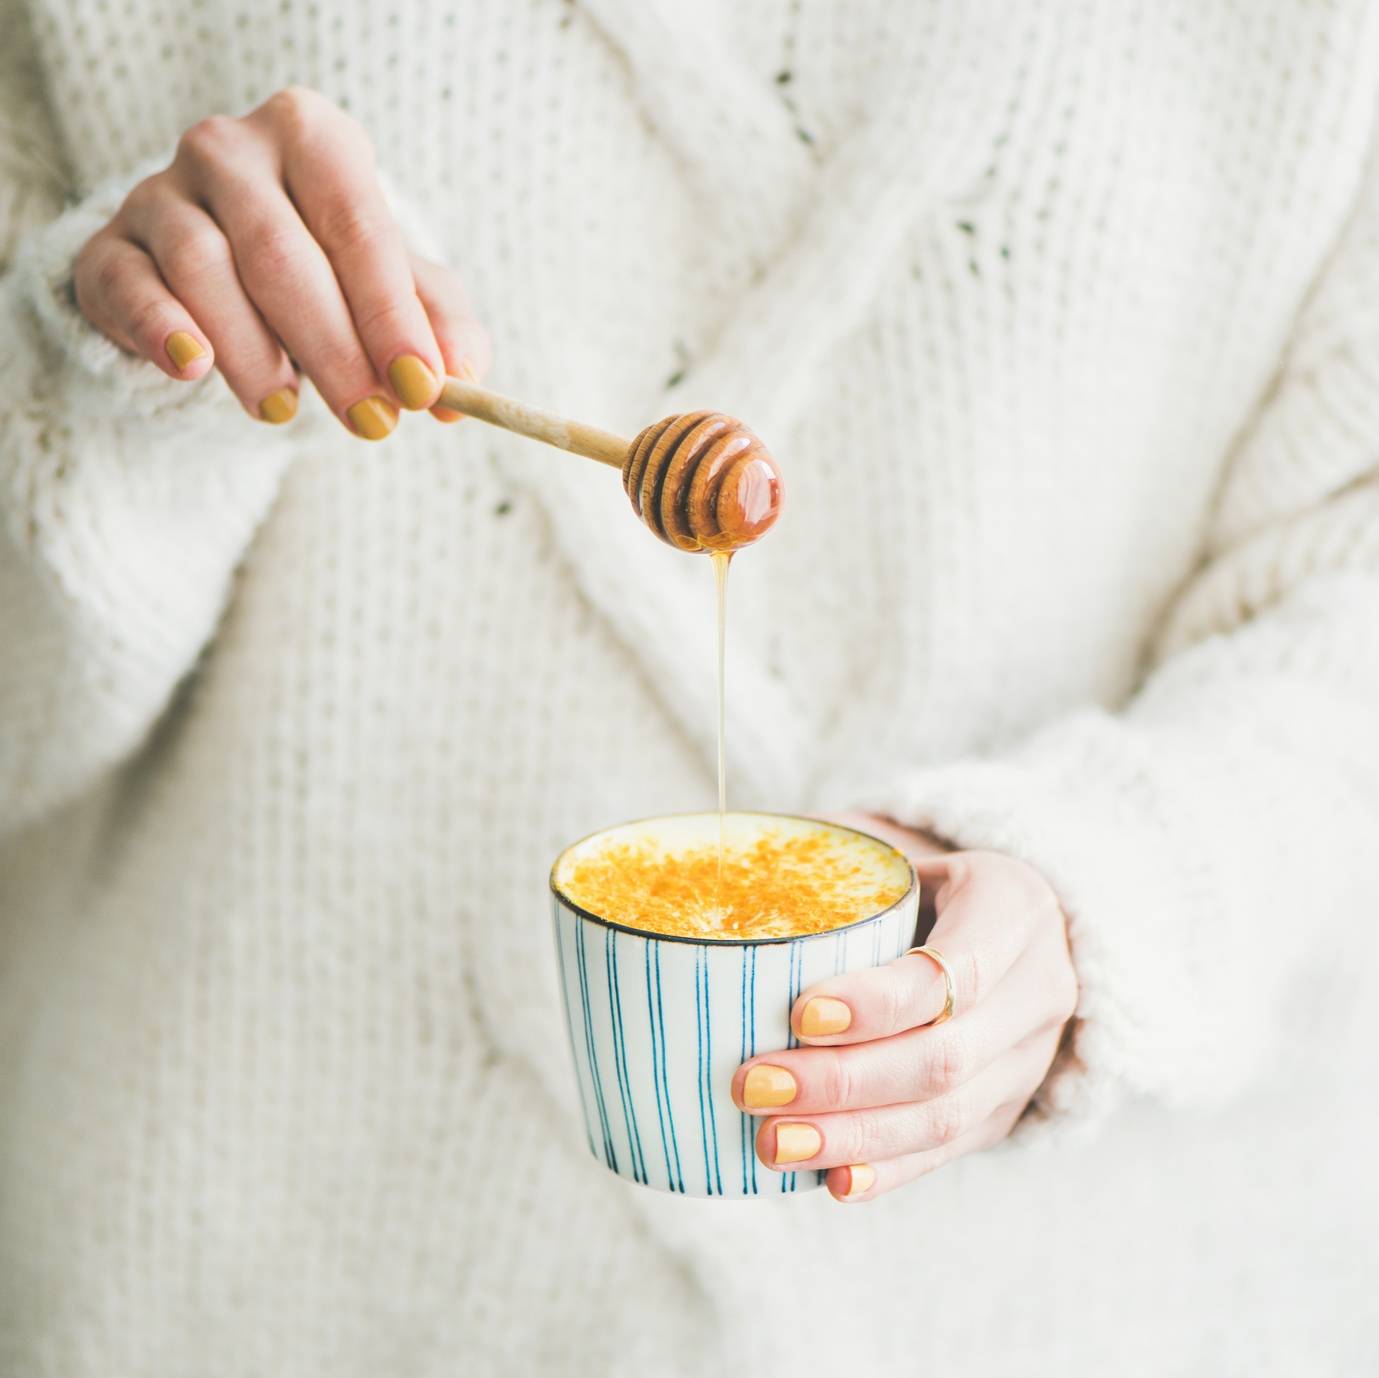 Jak w ciągu jednego dnia wyleczyć przeziębienie? Kobieta w ciepłym wełnianym swetrze trzyma kubek ciepłego mleka i drewnianą łyżkę do miodu. Zbliżenie na kubek i kobiece ręce z pomalowanymi na żółto paznokciami.